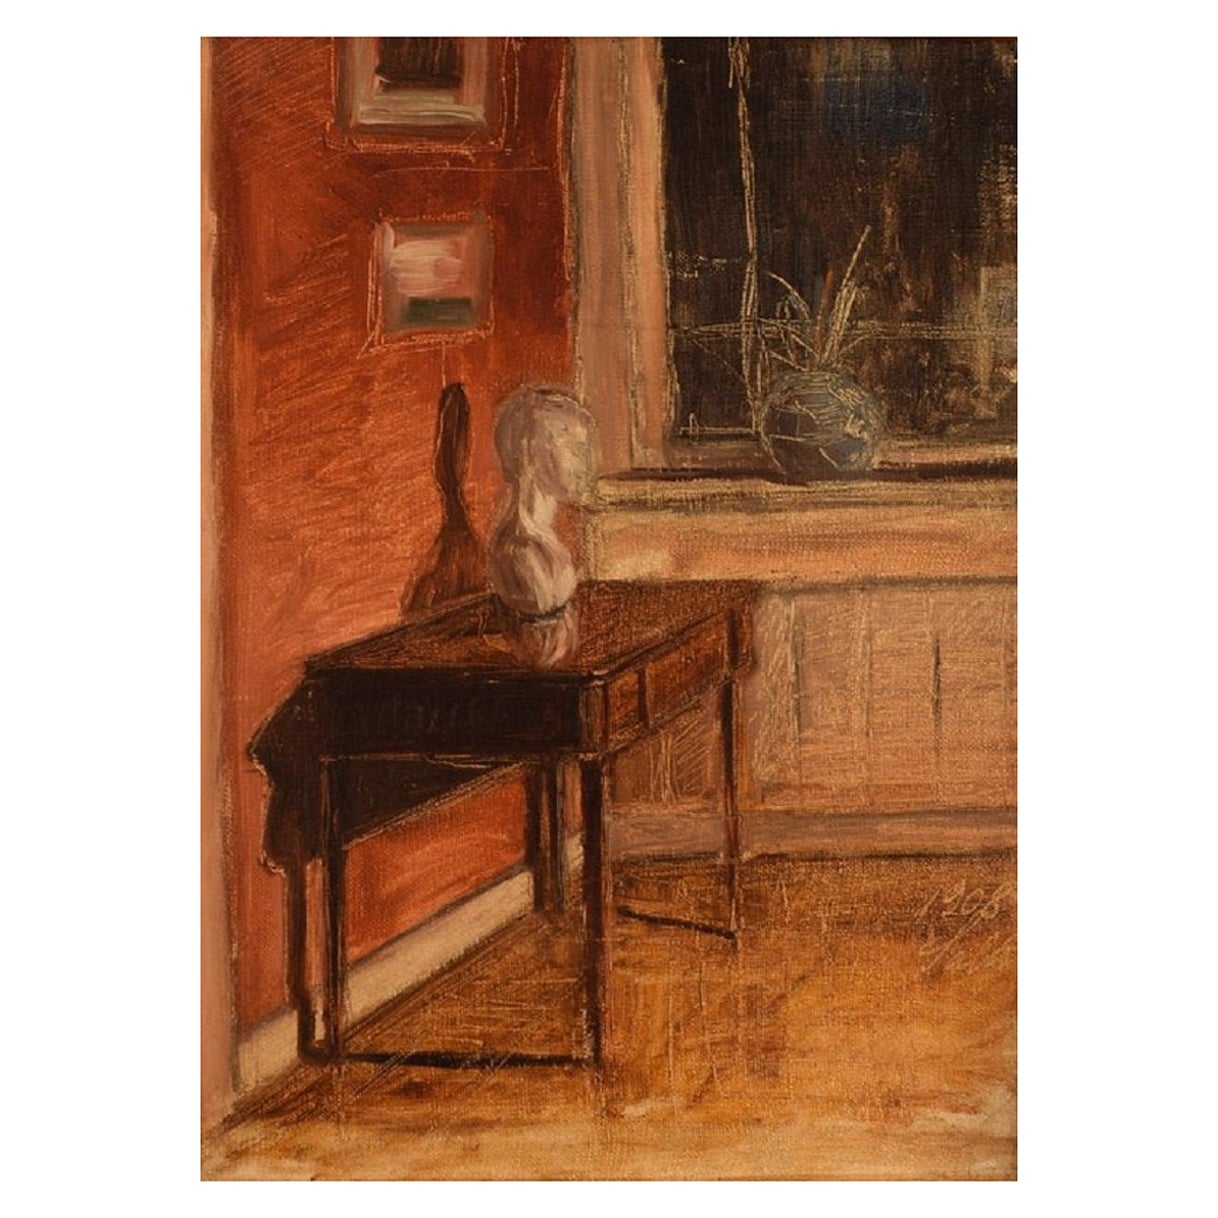 Axel Salto (1889-1961), huile sur carton, intérieur d'un salon, daté de 1908